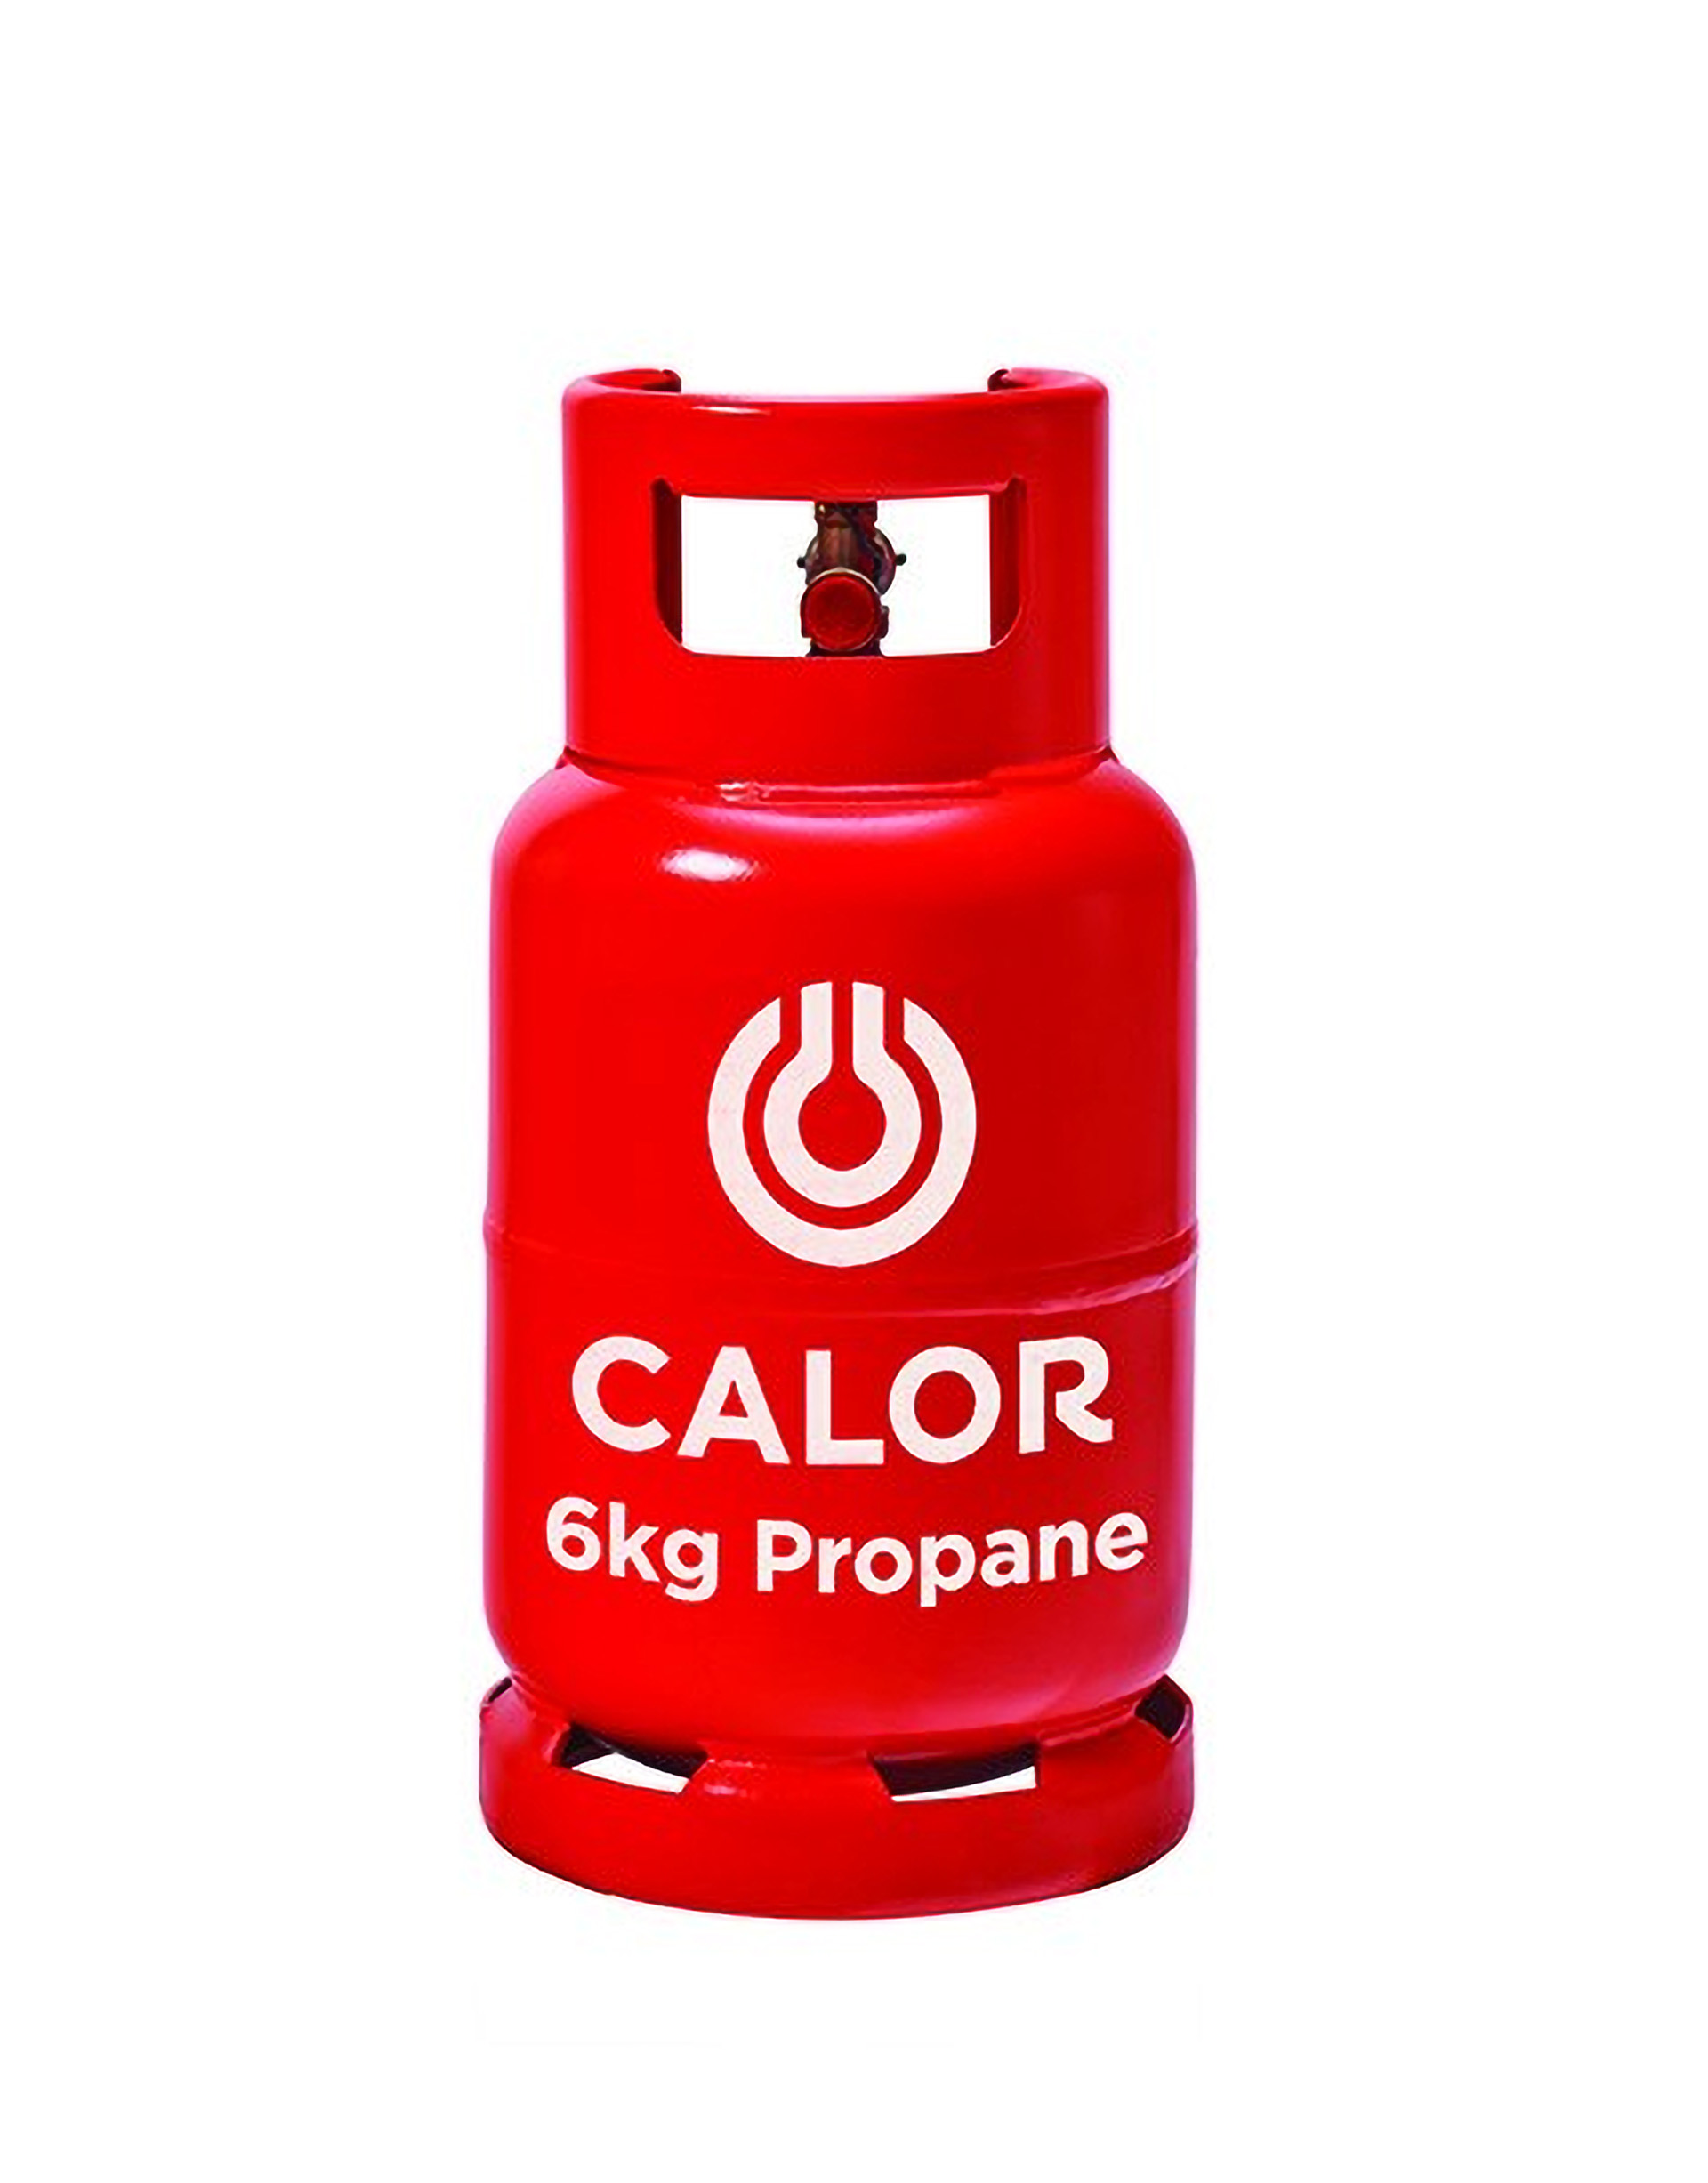 6kg propane gas bottle